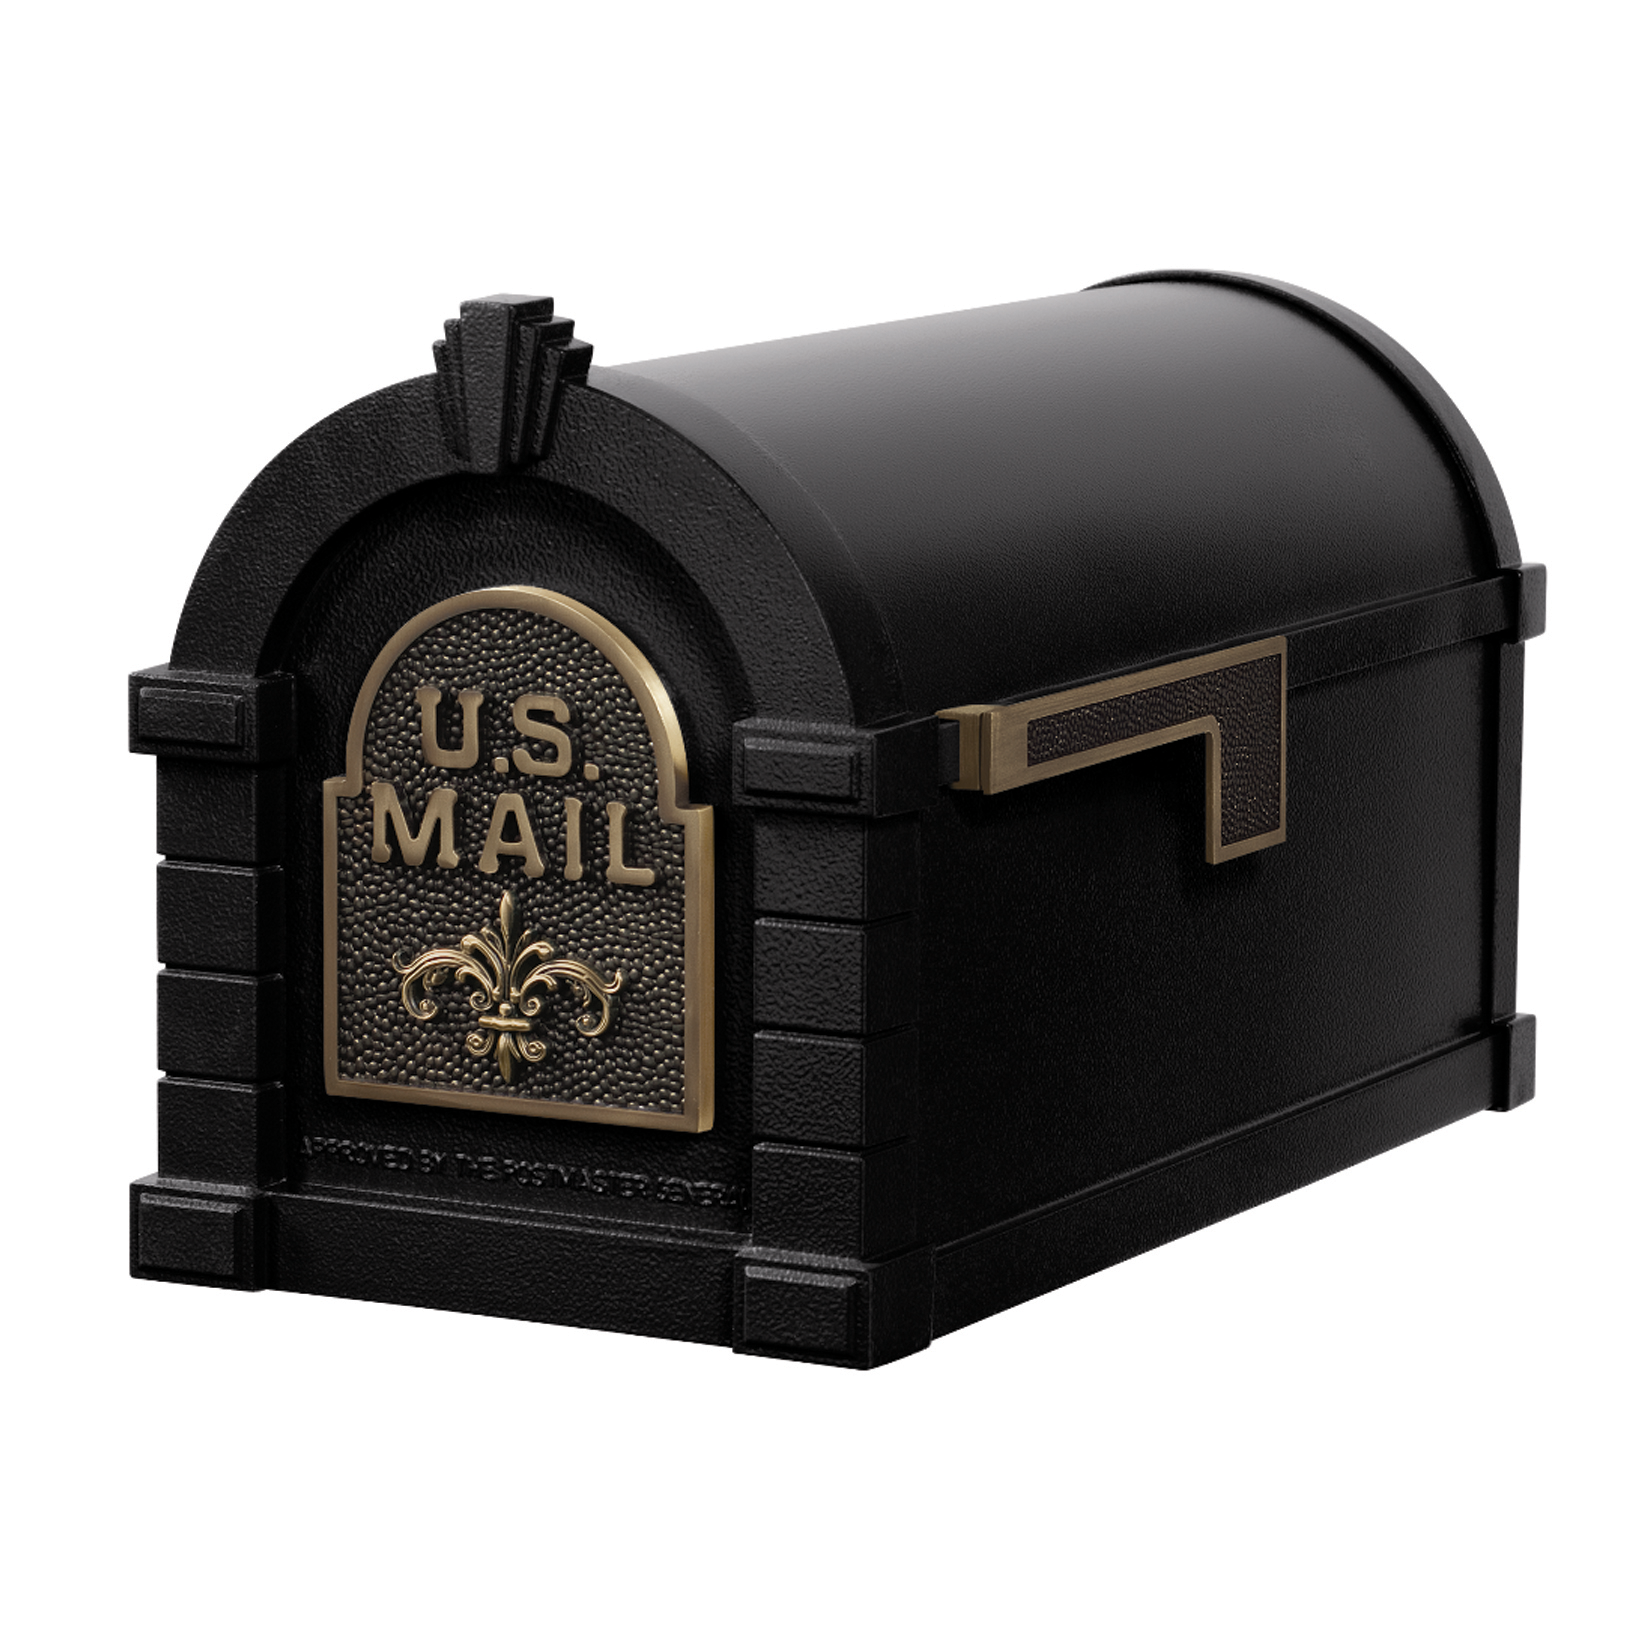 Gaines Fleur De Lis Keystone Mailboxes - Black with Antique Bronze